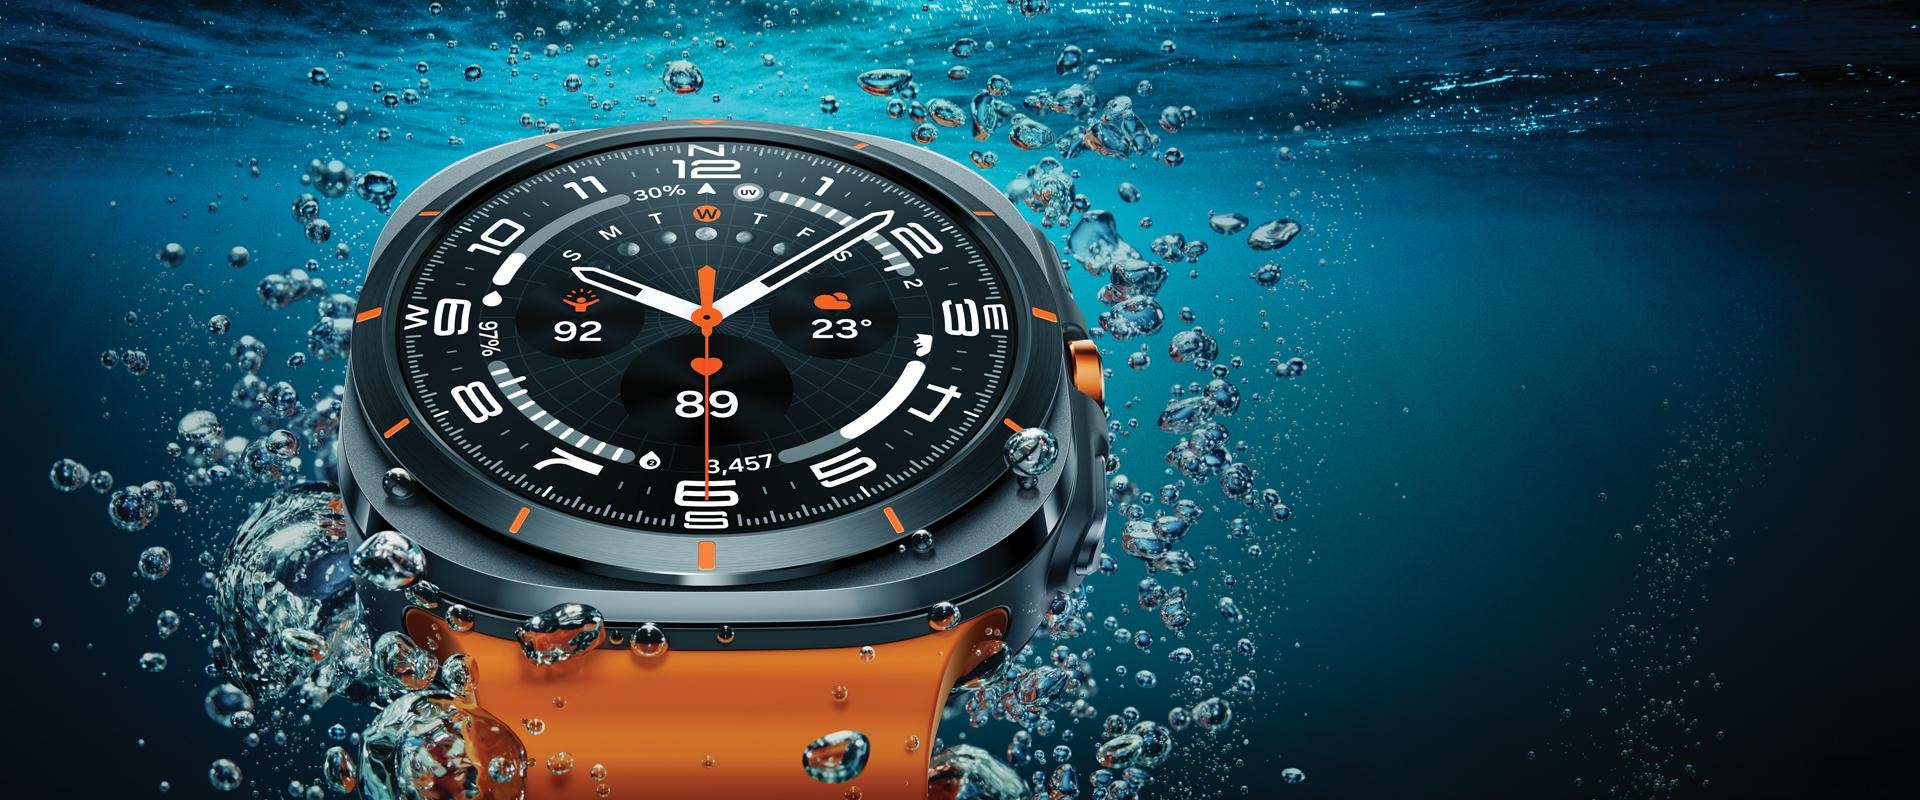 Laikrodis „Galaxy Watch Ultra“ stambiu planu matomas vandenyje, atskleidžiant jo dizainą.